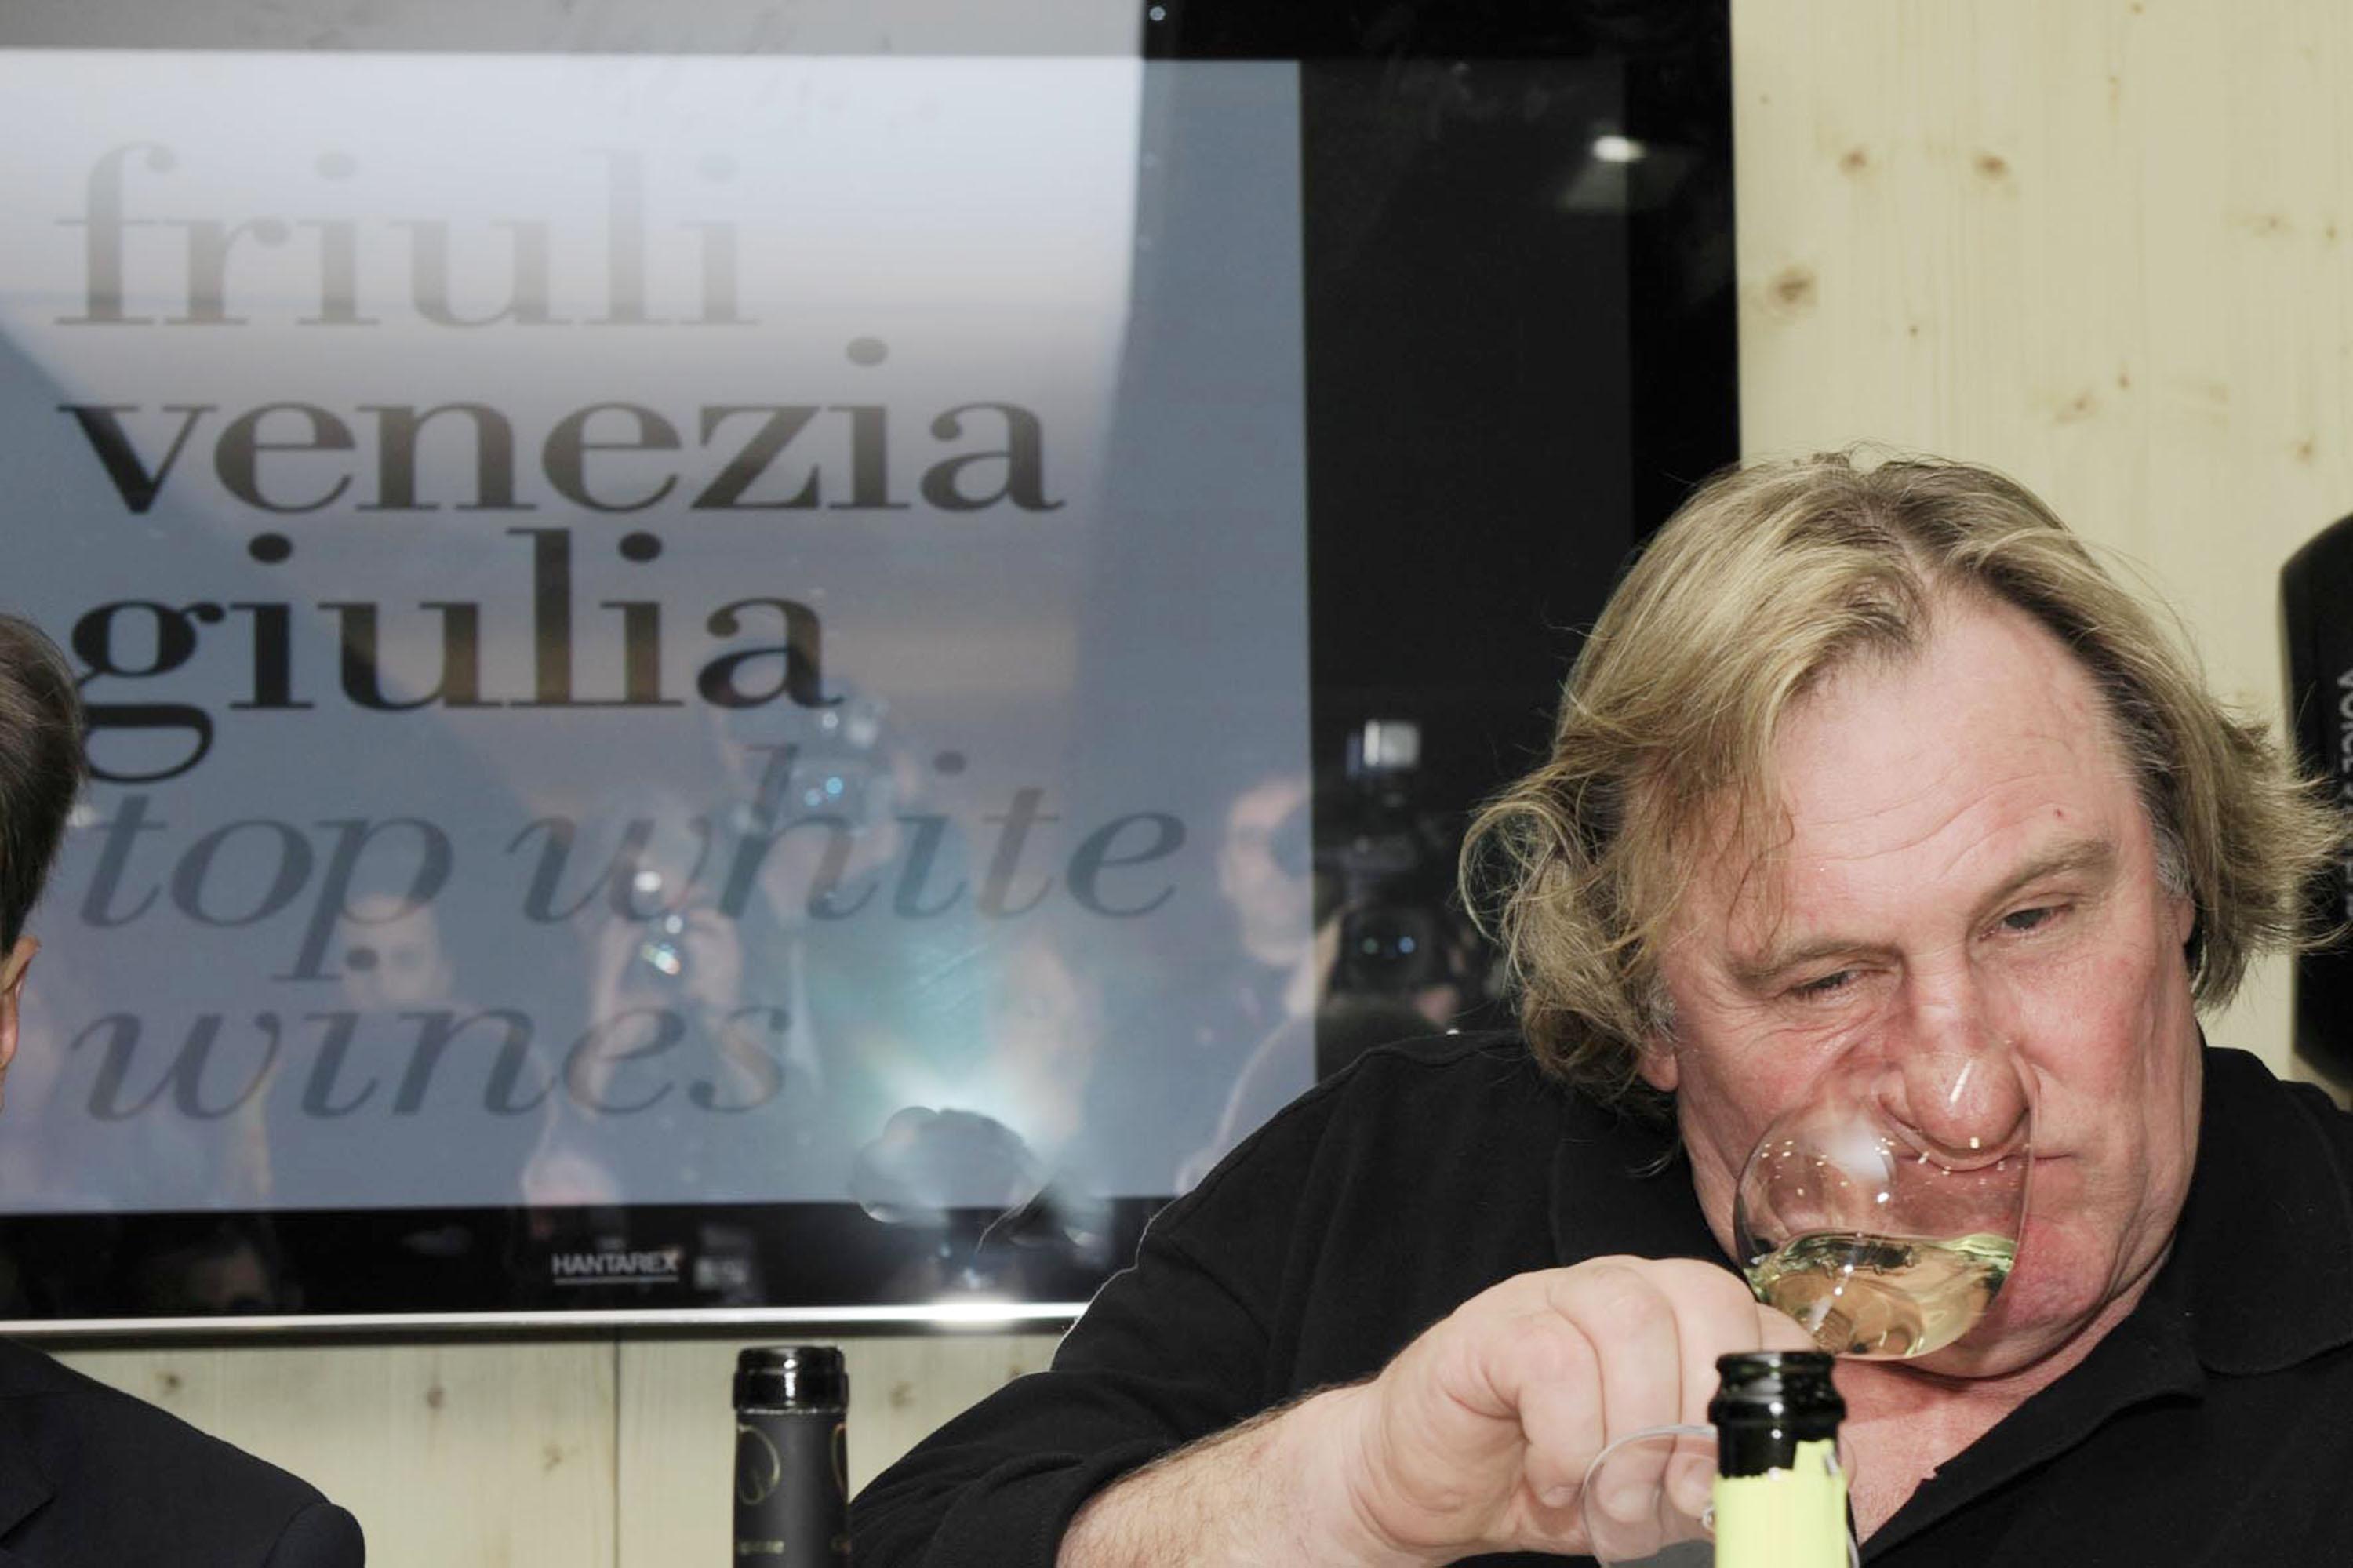 Gerard Depardieu (Attore, enologo, gourmet) nello stand del Friuli Venezia Giulia alla 44a edizione di Vinitaly. (Verona 10/04/10)
